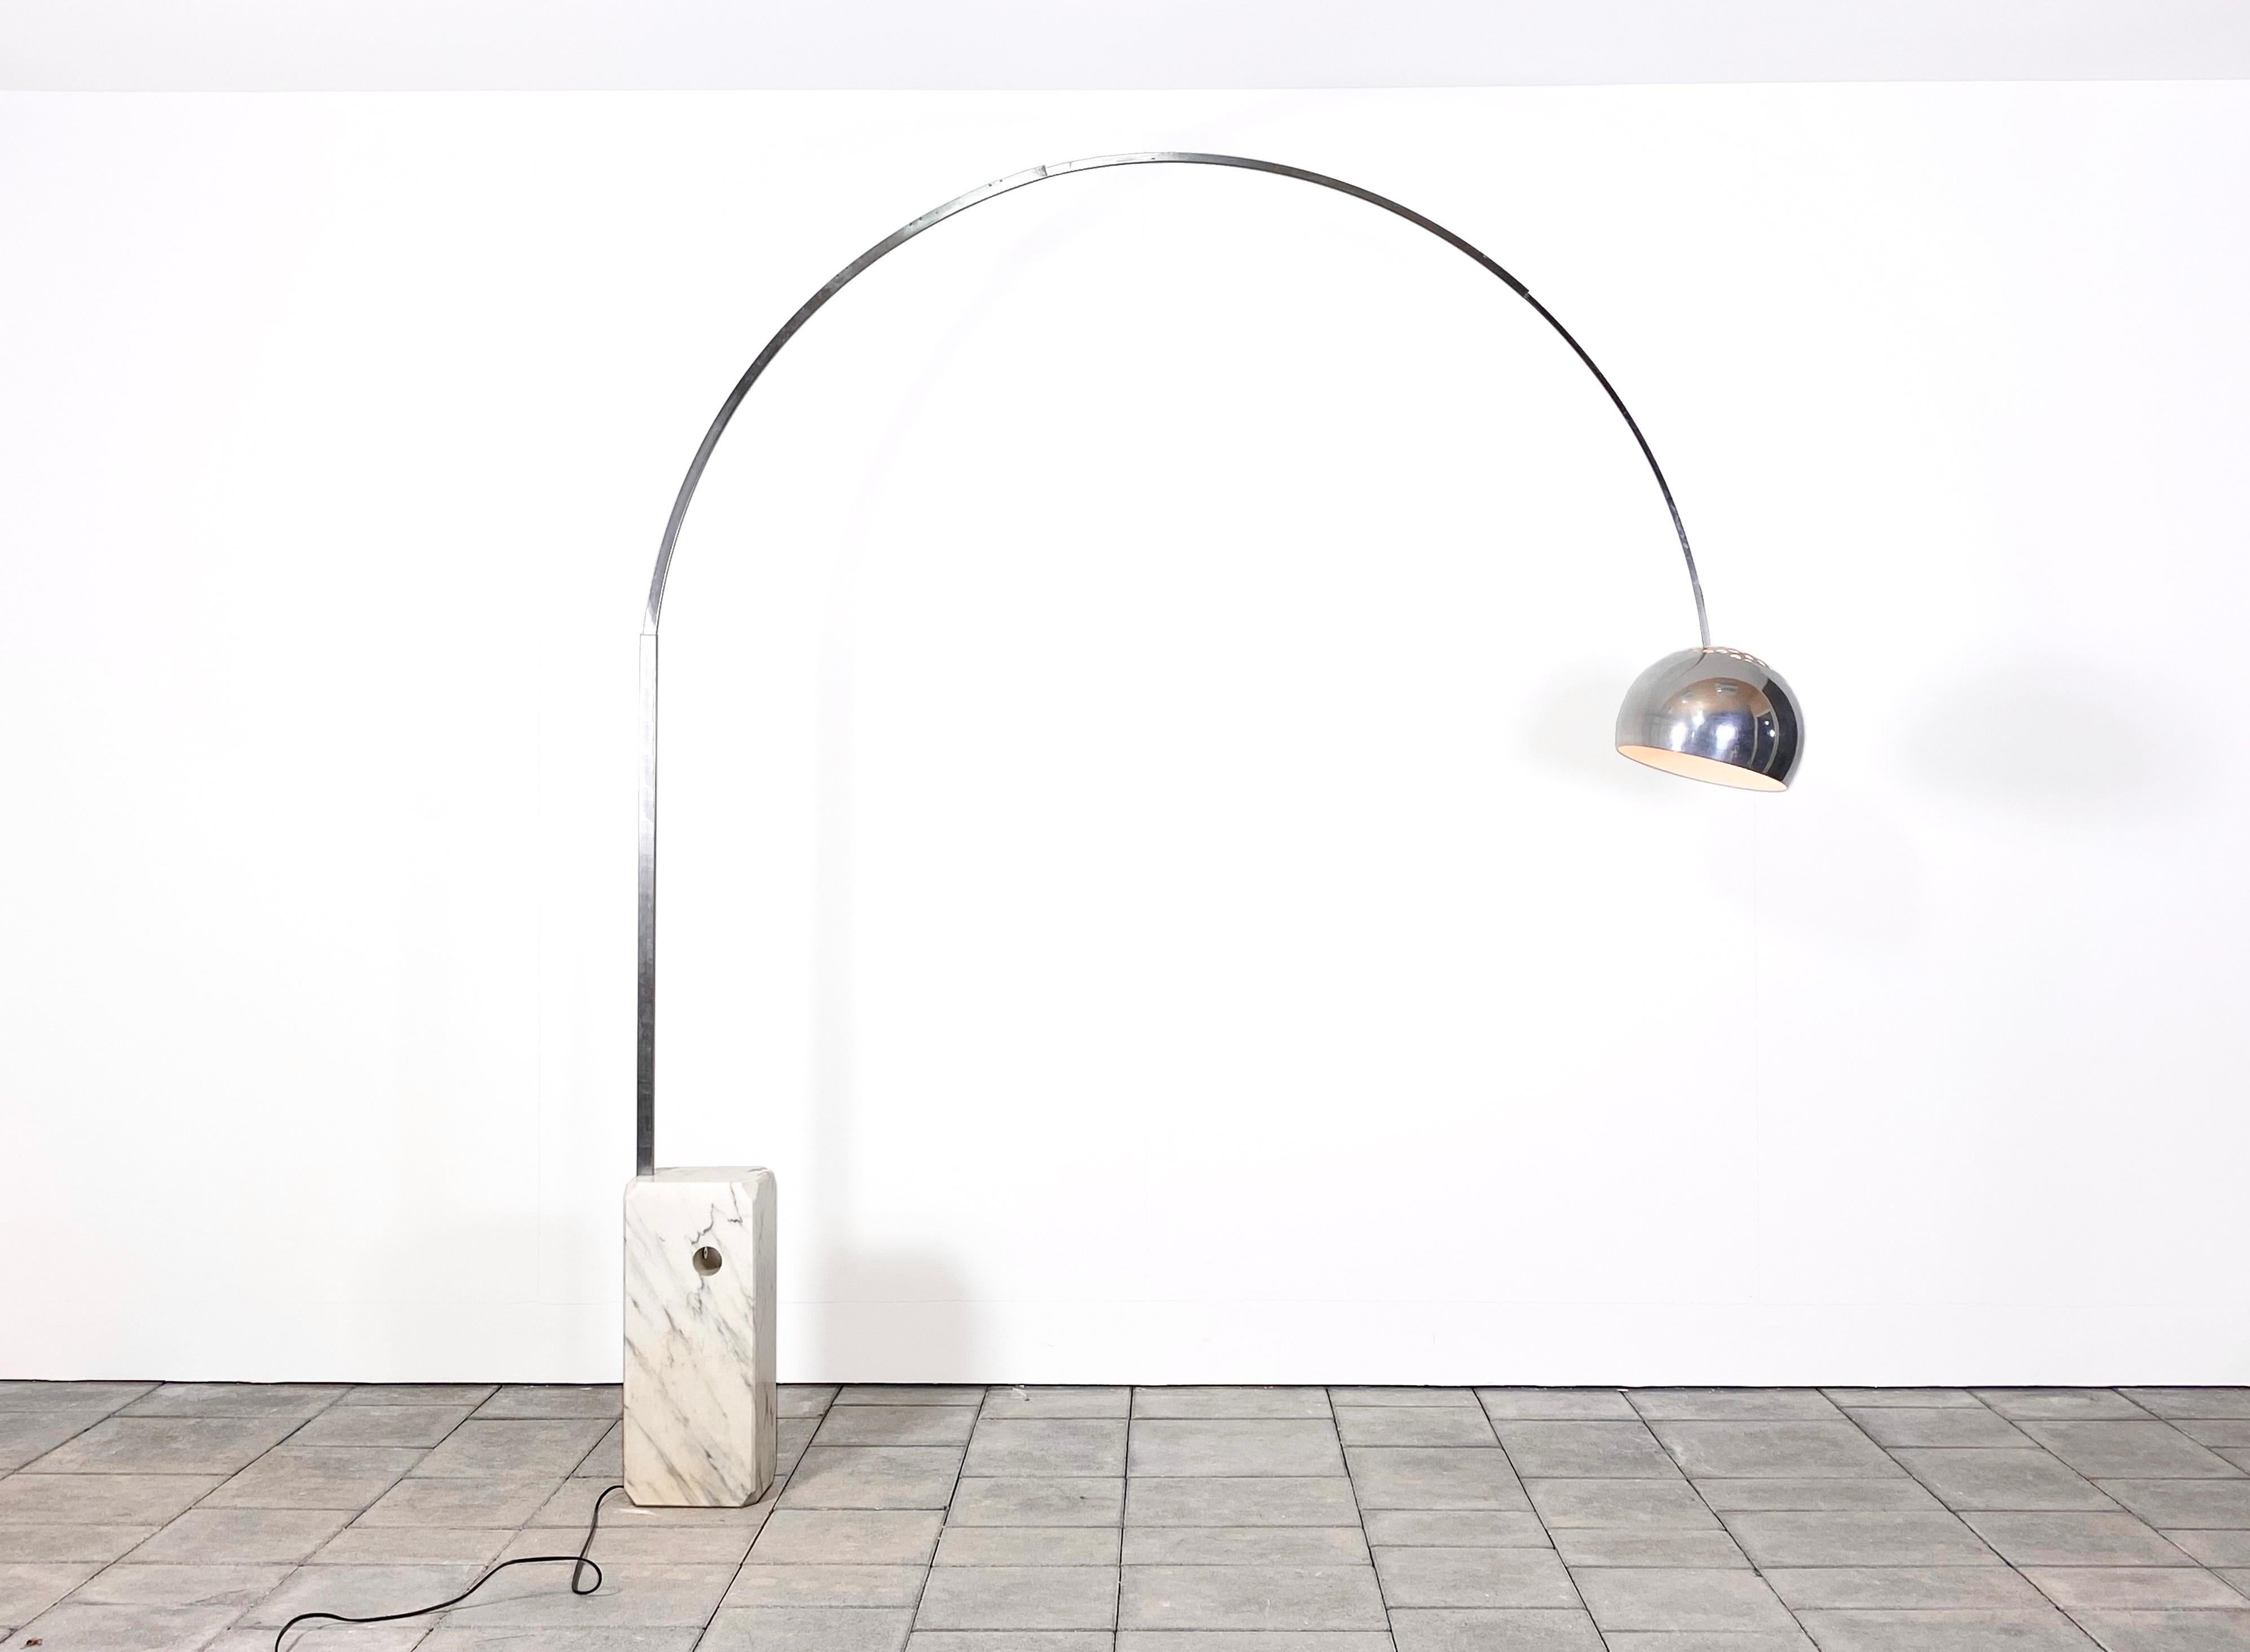 Arco Stehleuchte, entworfen von Achille & Pier Giacomo Castiglioni für Flos im Jahr 1962

hergestellt von Flos, Italien in den 1960er Jahren. Mit Herstellerbett auf der Innenseite des Lampenschirms.

Die berühmten italienischen Designer Achille und